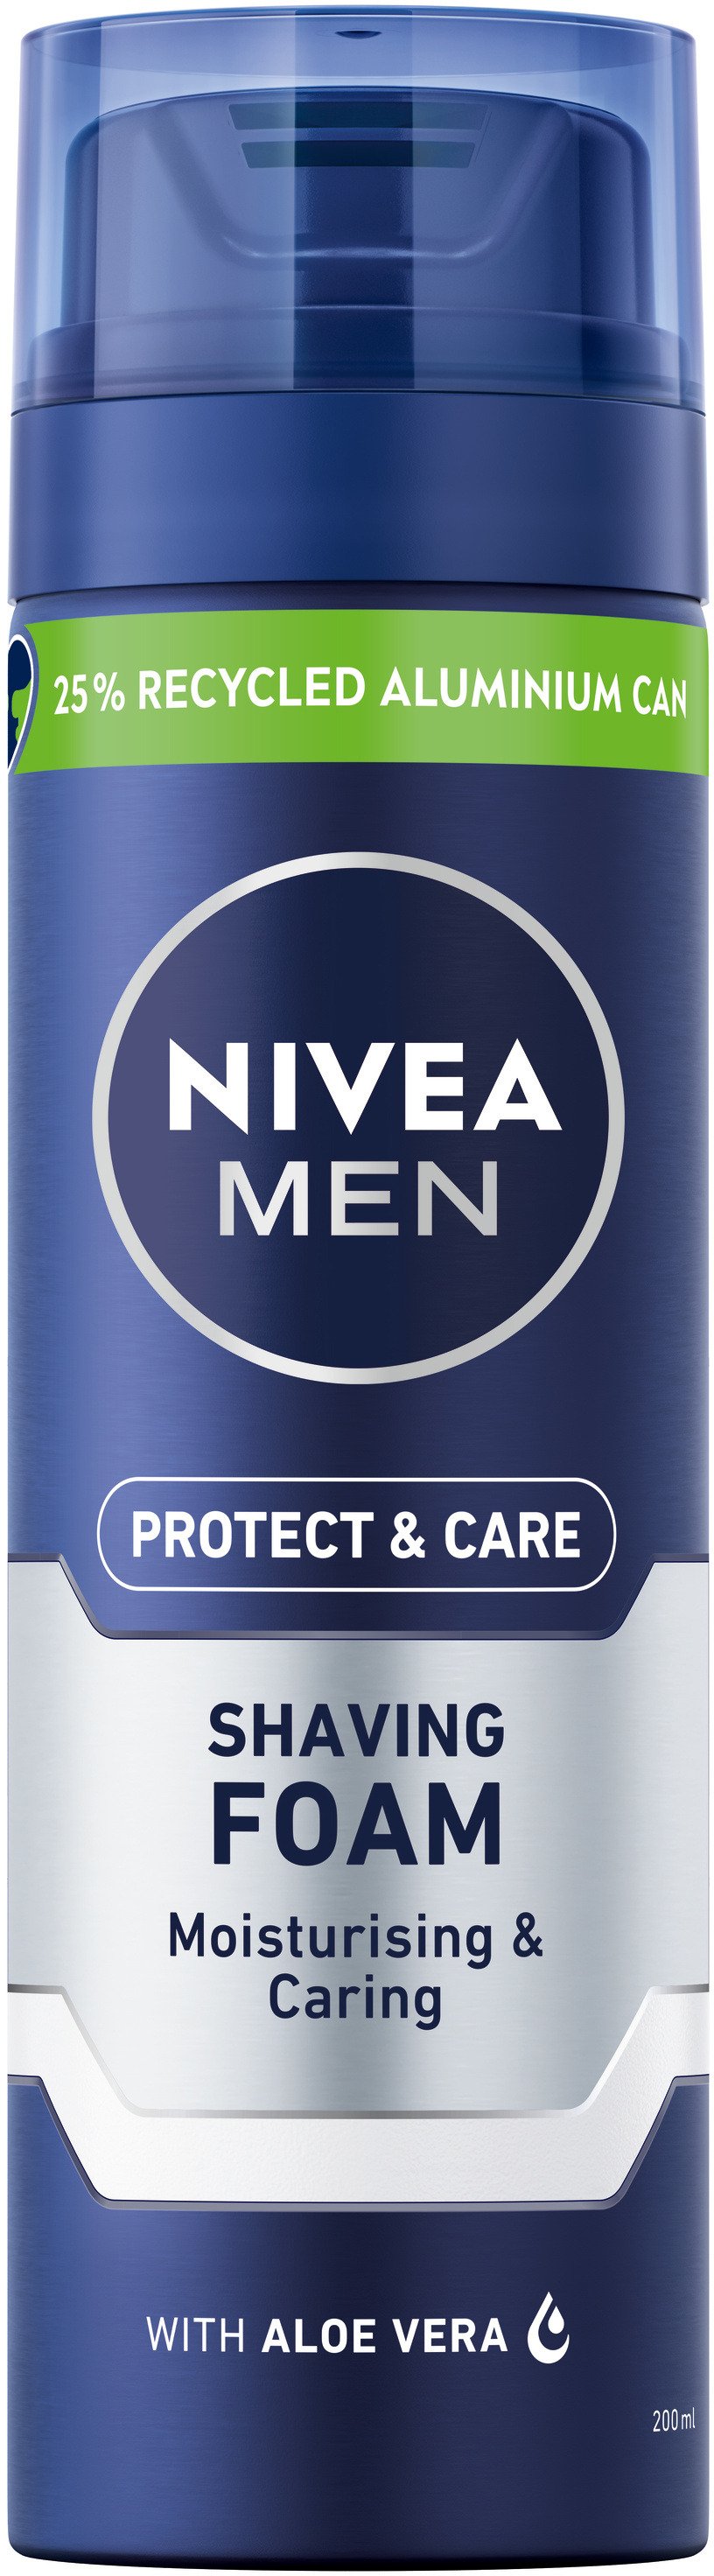 NIVEA MEN Protect & Care Raklödder 200ml